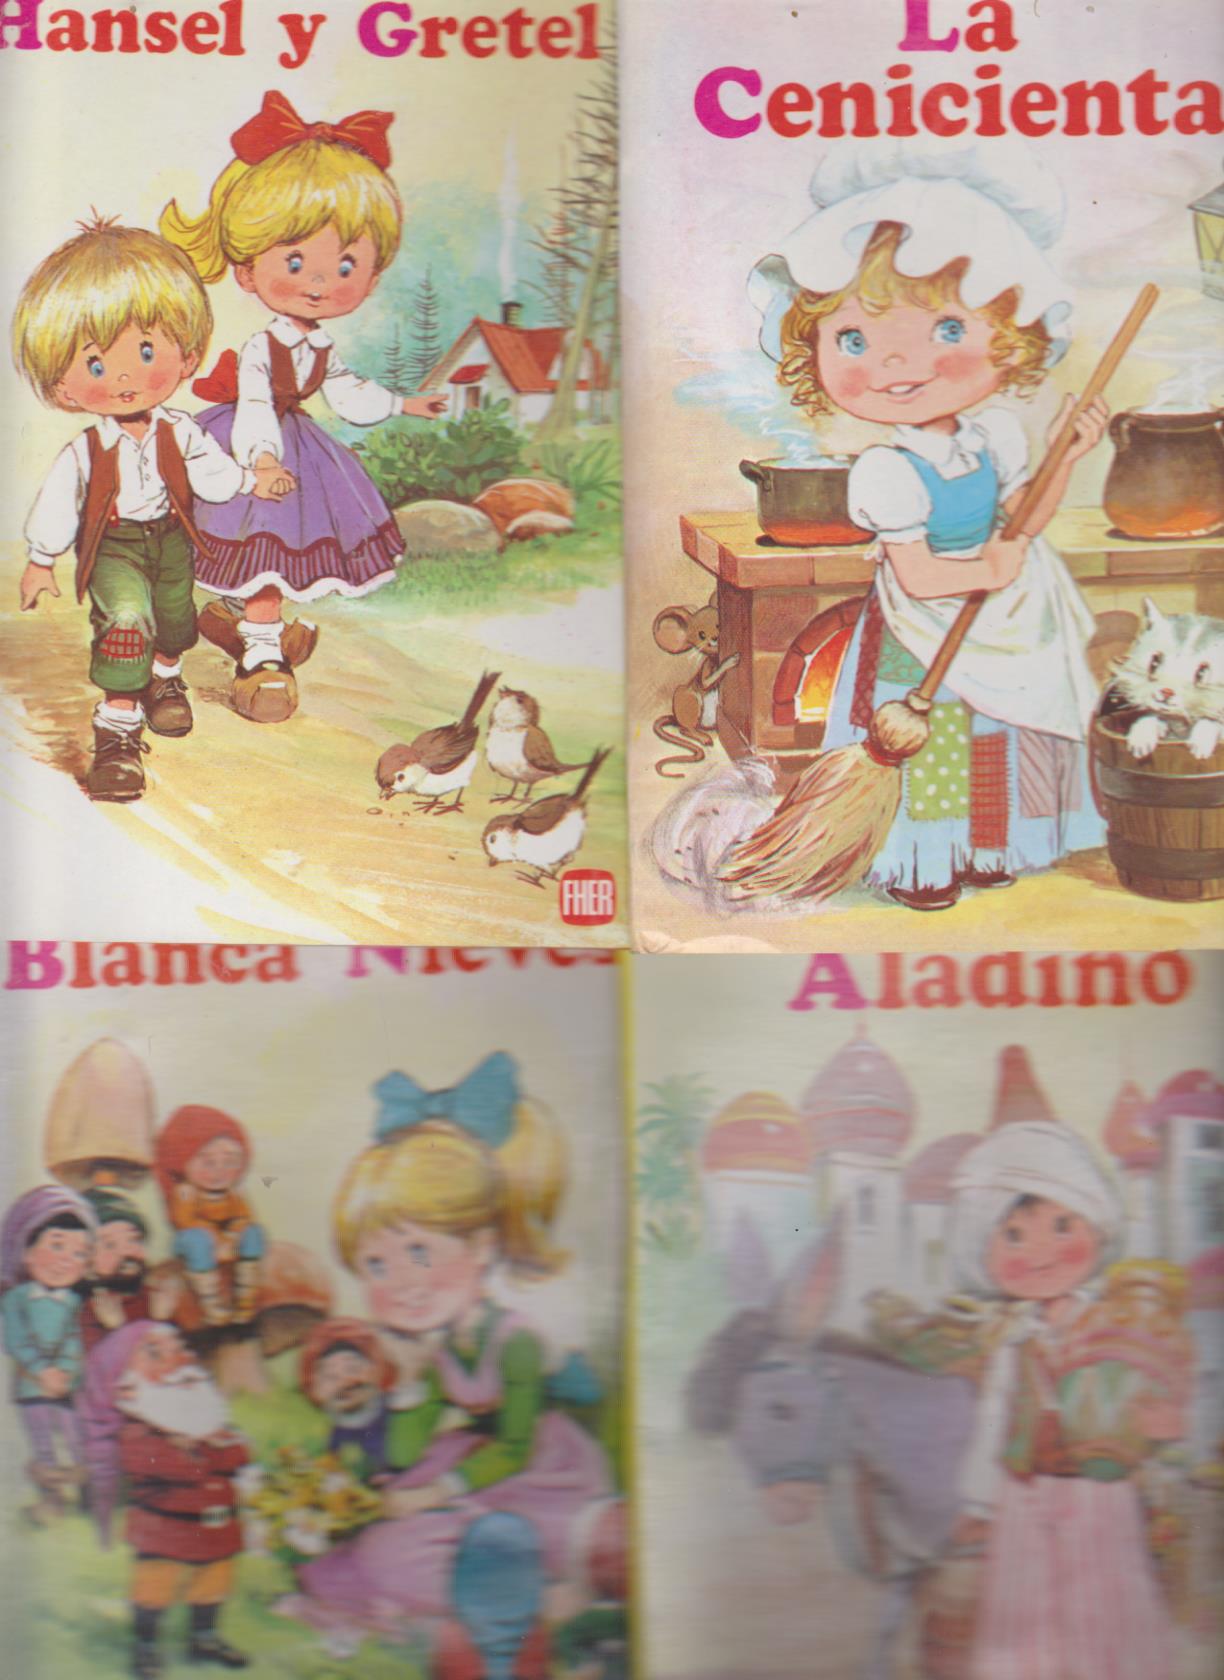 Cuentos desplegables. Colección Iris nº 1, 2, 3 y 4. La Cenicienta, Hansel y Gretel, Aladino y Blanca Nieves. Fher